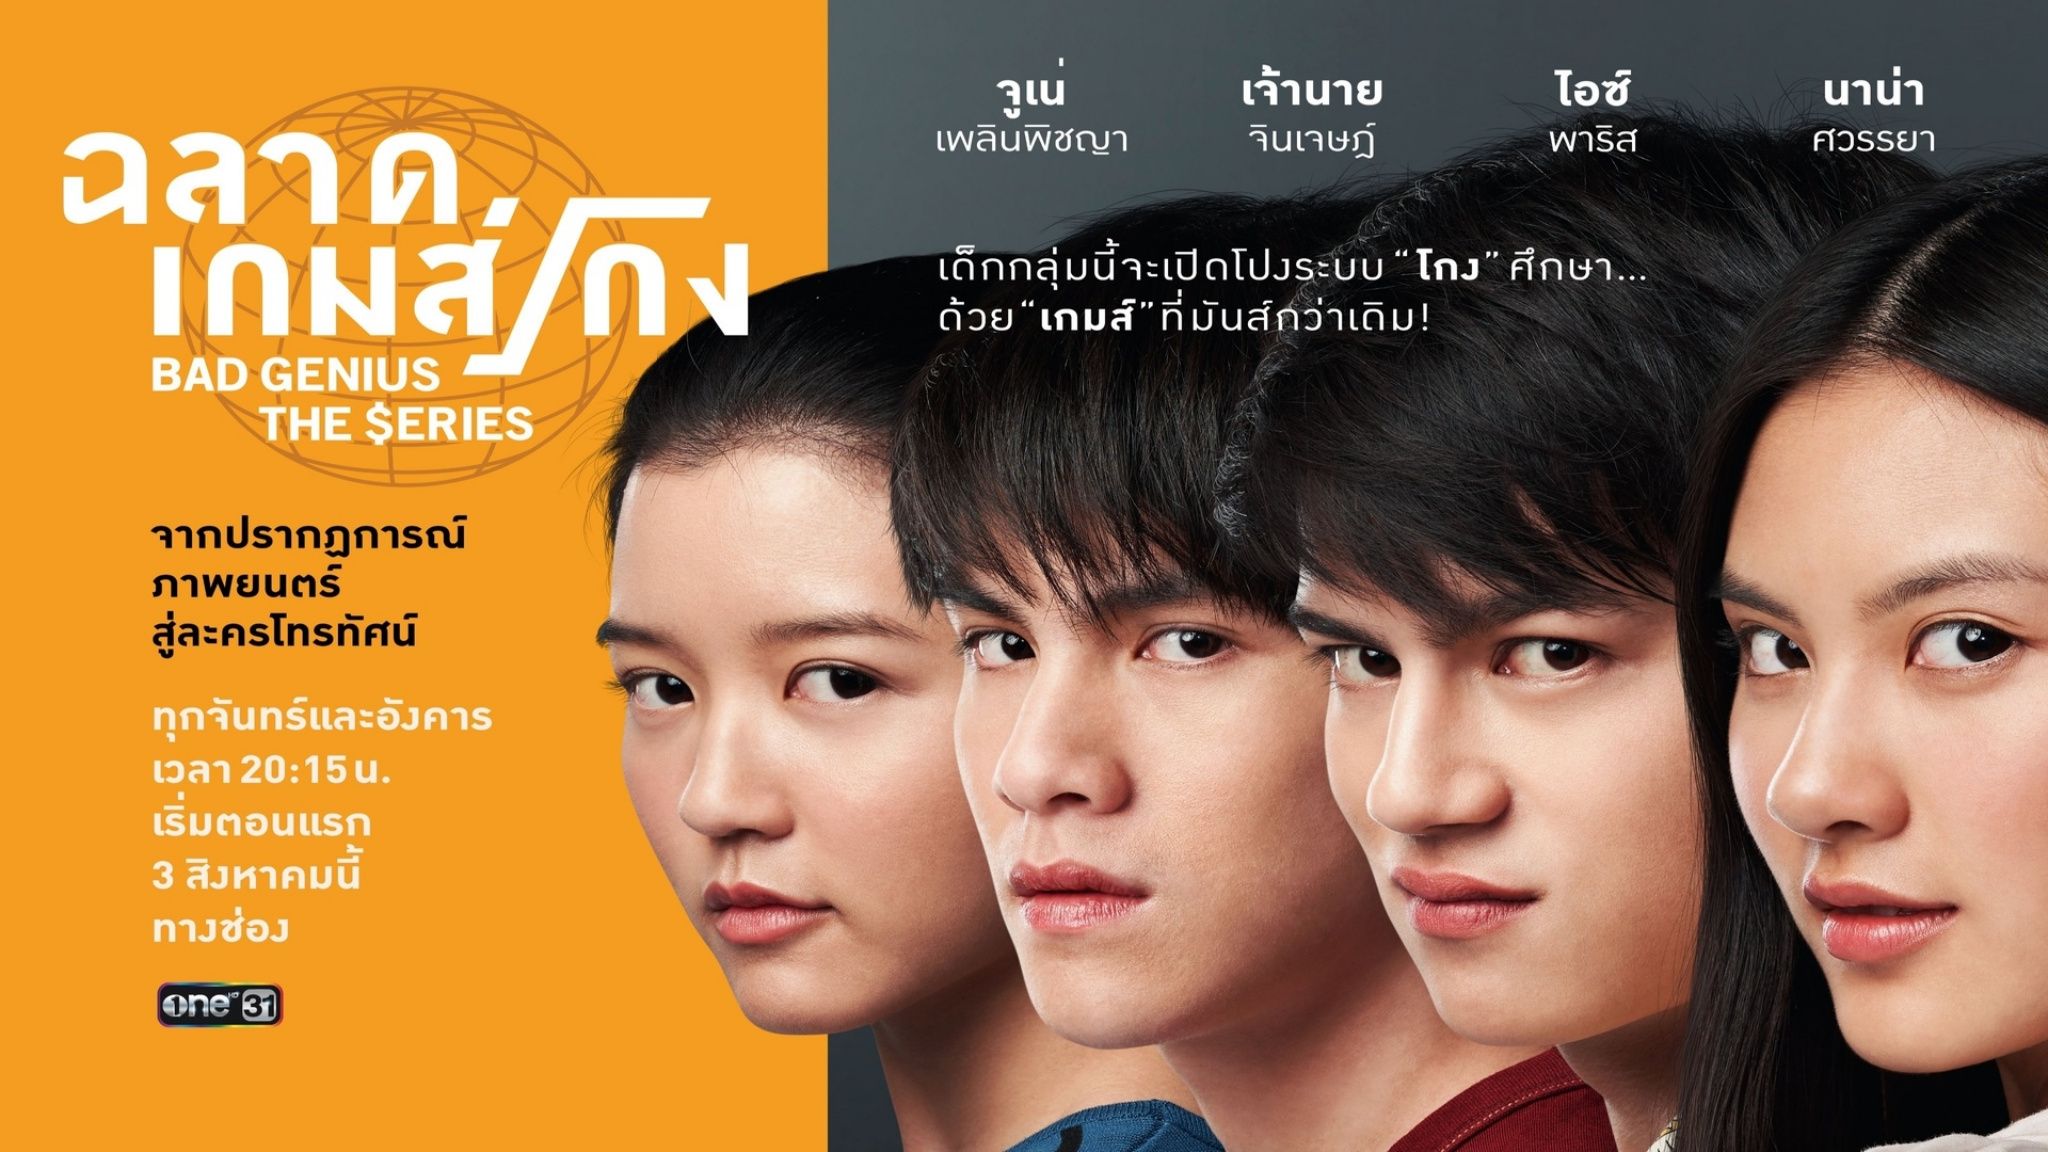 Serial Bad Genius The Series asal negeri Thailand malam ini akan menayangkan episode terakhir ke 12 pada pukul 21.00 WIB.